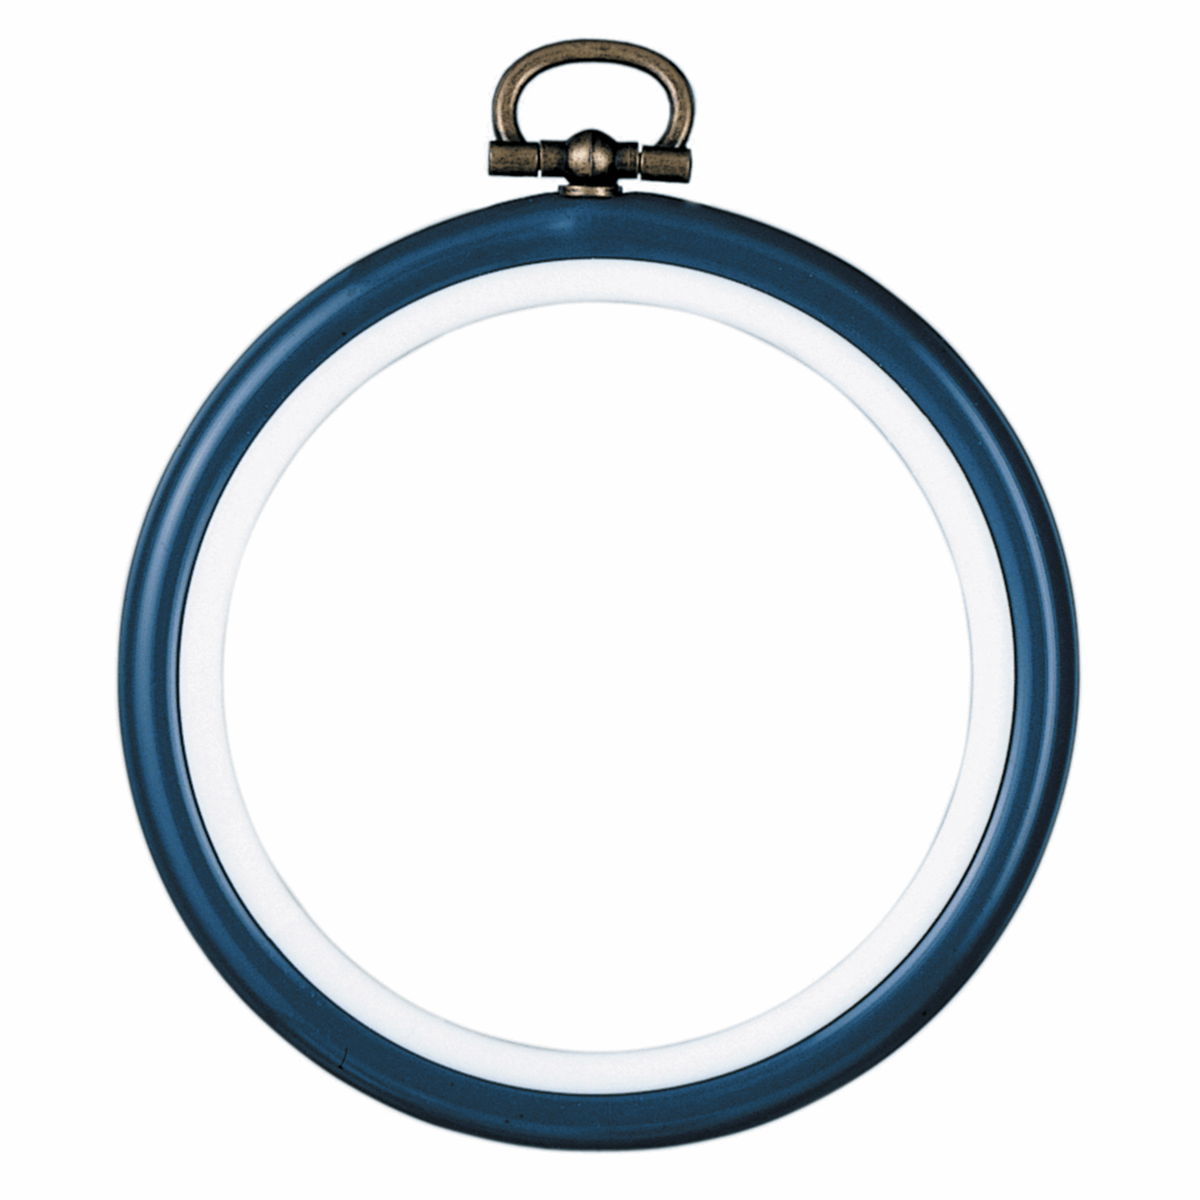 Vervaco Blue Circular Frame - 7.5cm Diameter